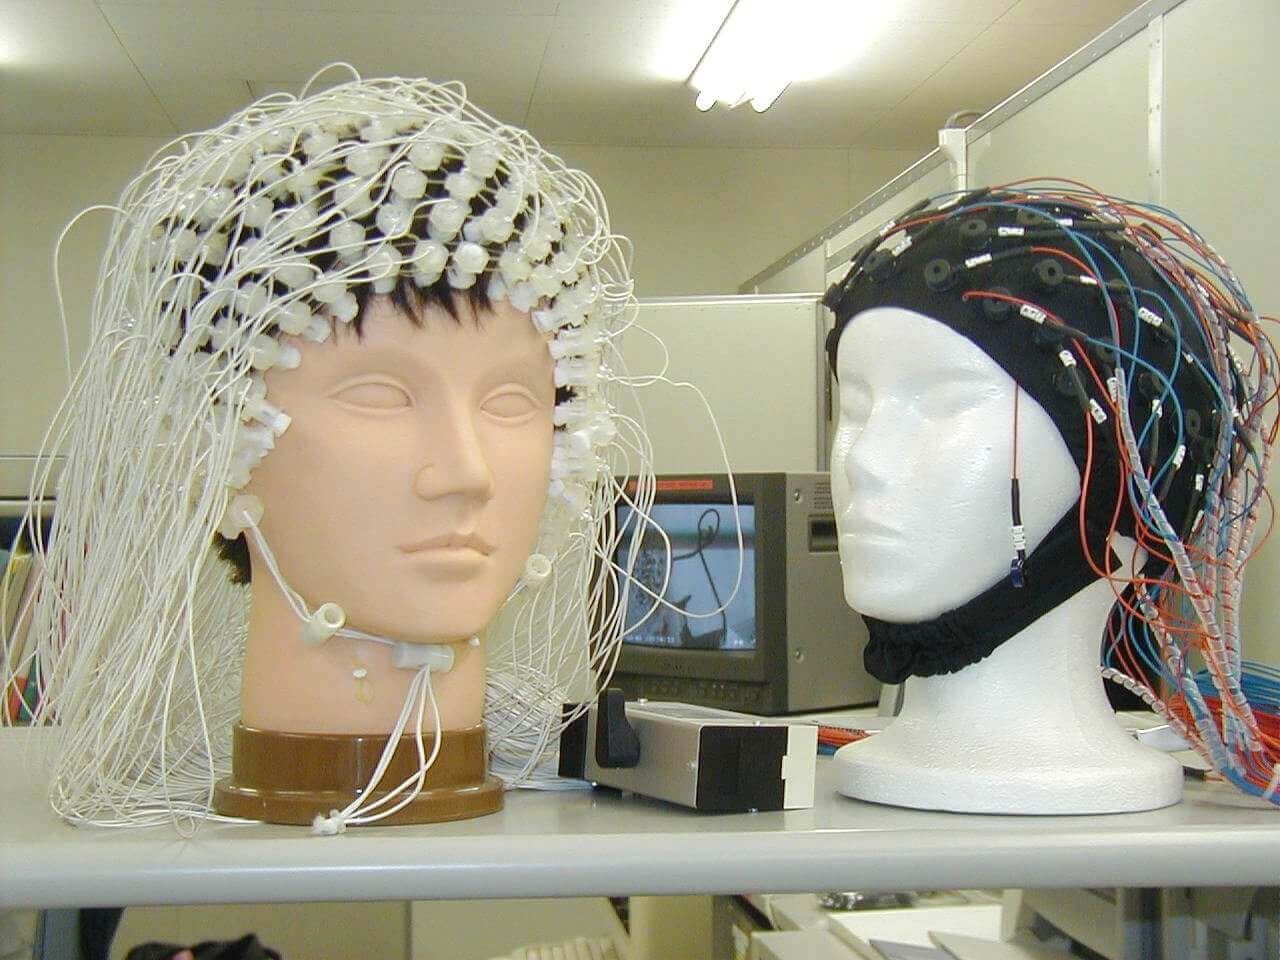 Шлем для ээг. ЭЭГ головного мозга электроды. Электродная шапочка для ЭЭГ. Шлем для ЭЭГ Нейрософт. Электроэнцефалография головного мозга (ЭЭГ).